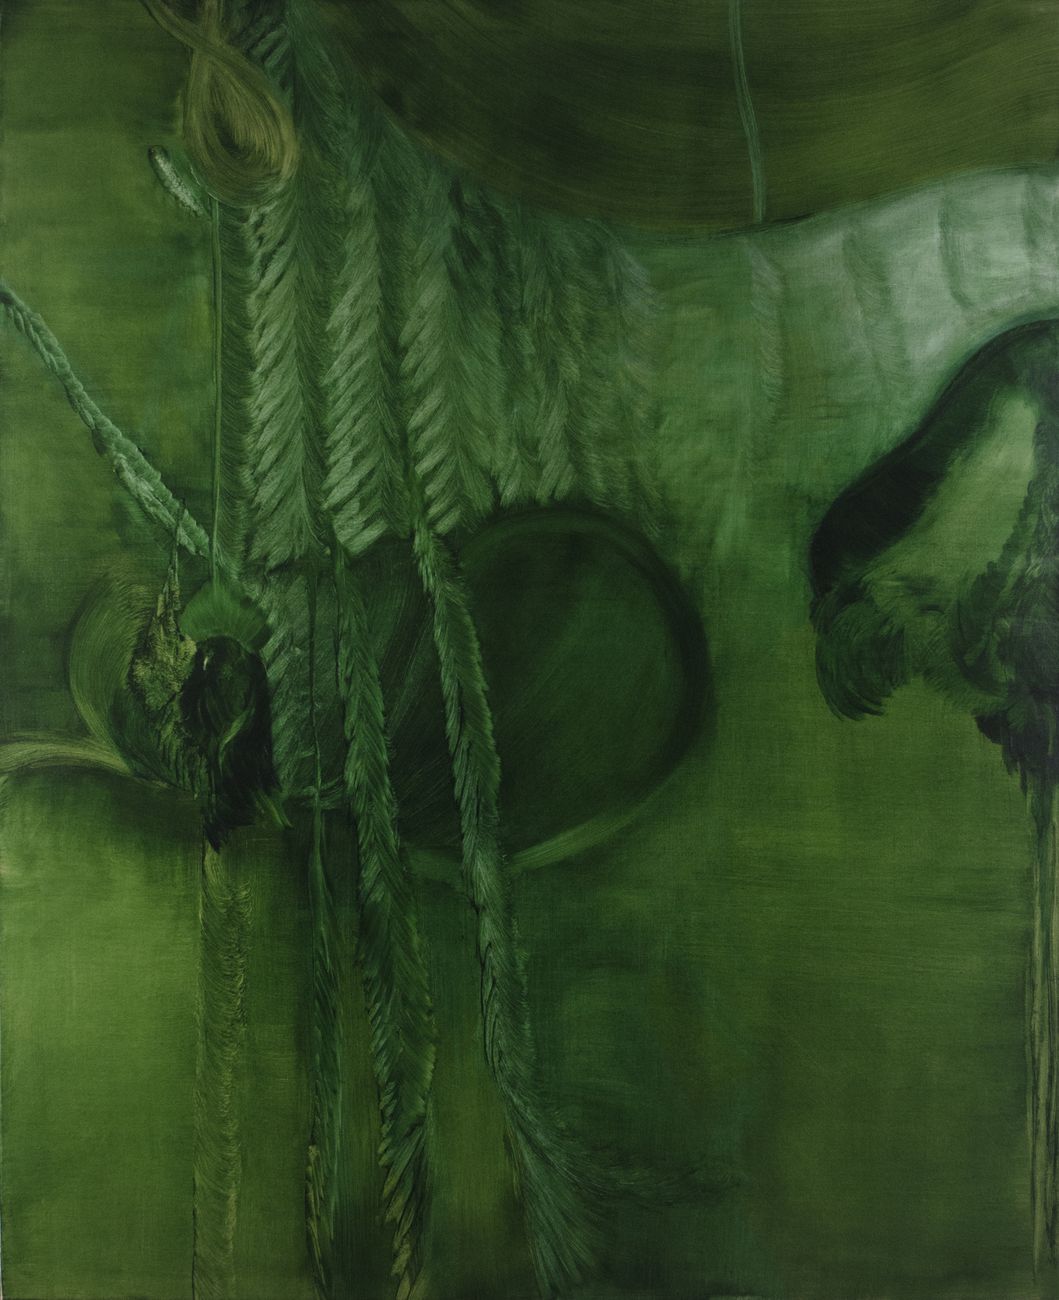 Marta Sforni, Mirror Green #20, 2015, olio su tela, 135 x 110 cm